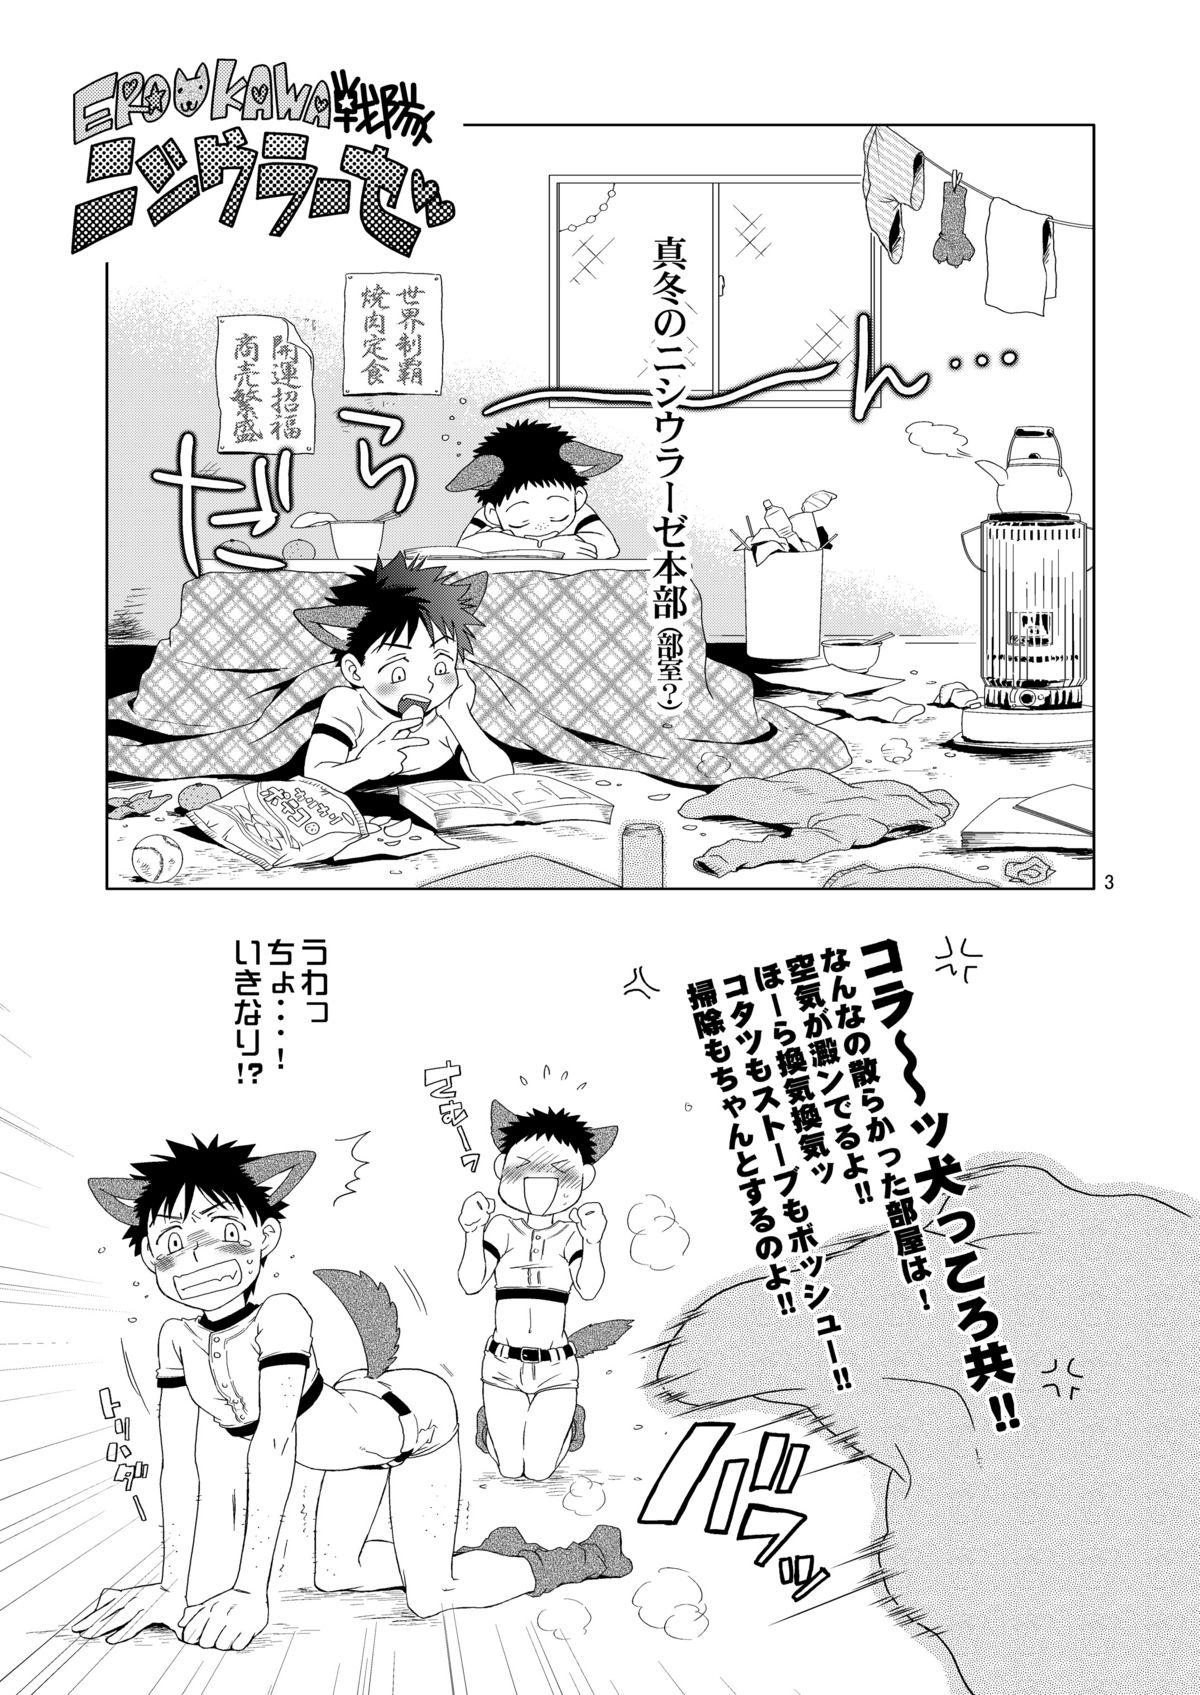 Porra Tsuyudaku Fight! 4 - Ookiku furikabutte Buceta - Page 4